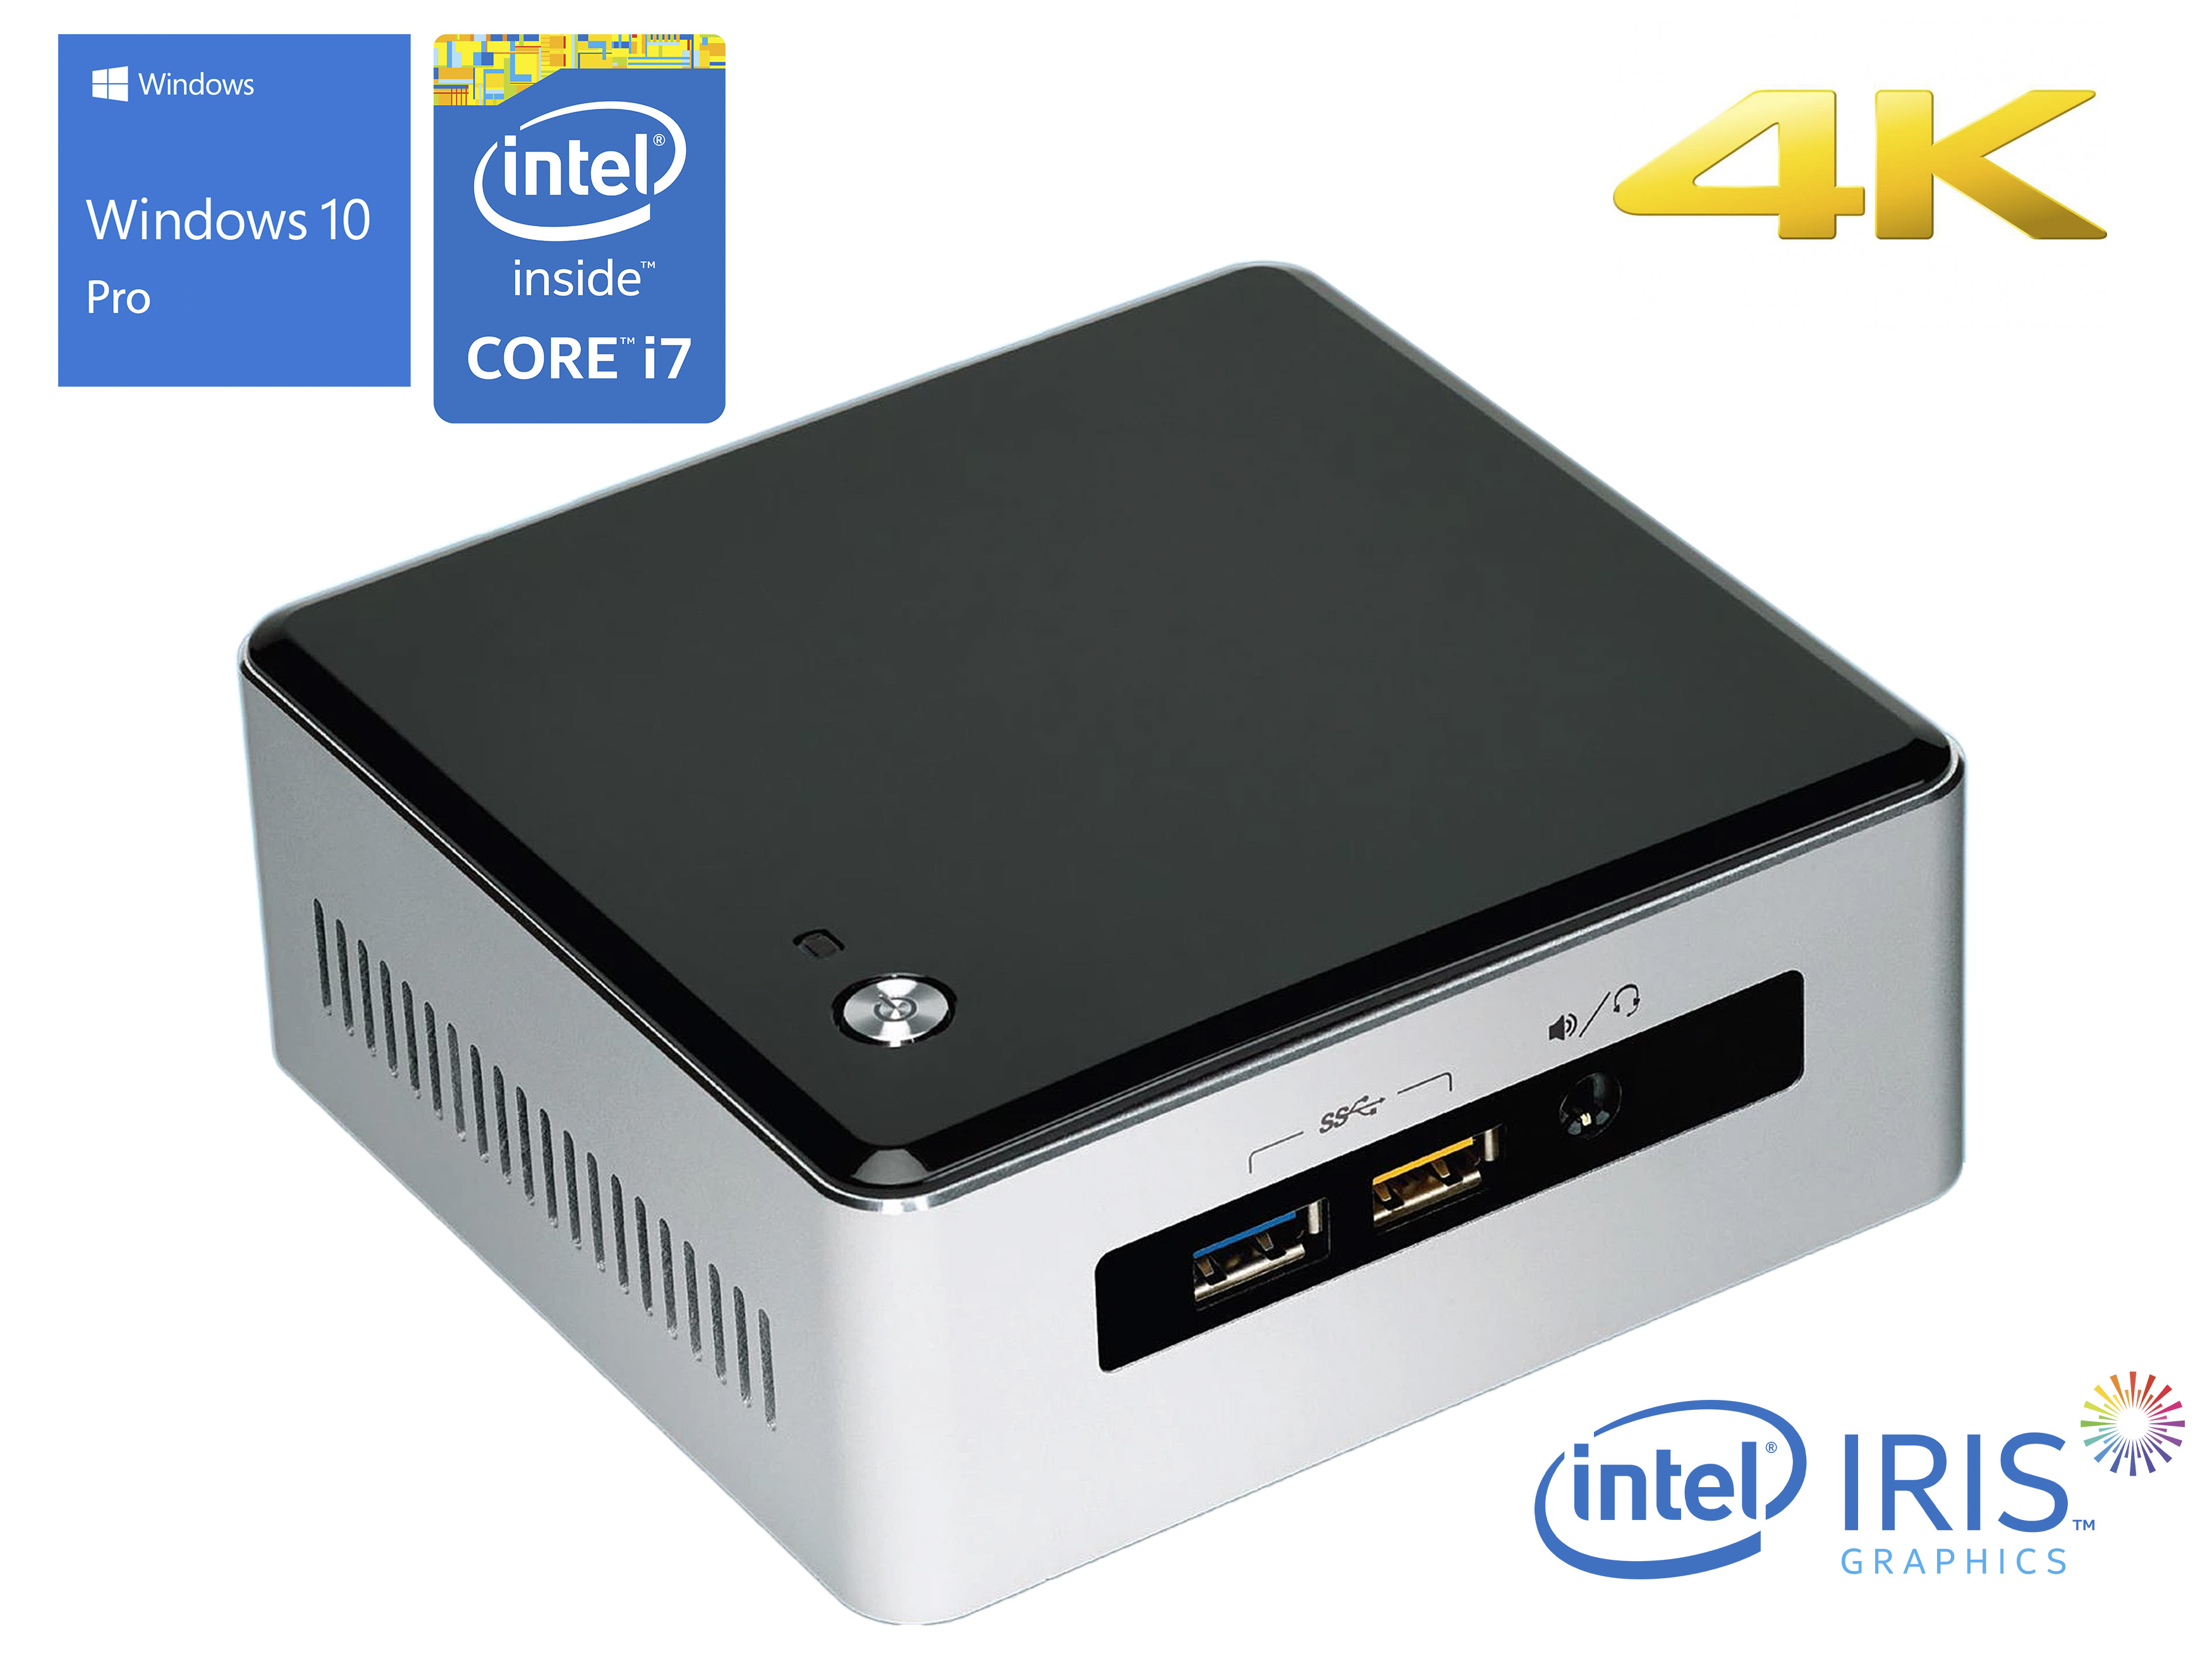 Intel NUC5i7RYH Mini PC, Intel Core i7-5557U Upto 3.40GHz, 16GB RAM, 2TB NVMe SSD + 1TB HDD, Mini HDMI, Mini DisplayPort, Wi-Fi, Bluetooth, Windows 10 Pro - image 1 of 6